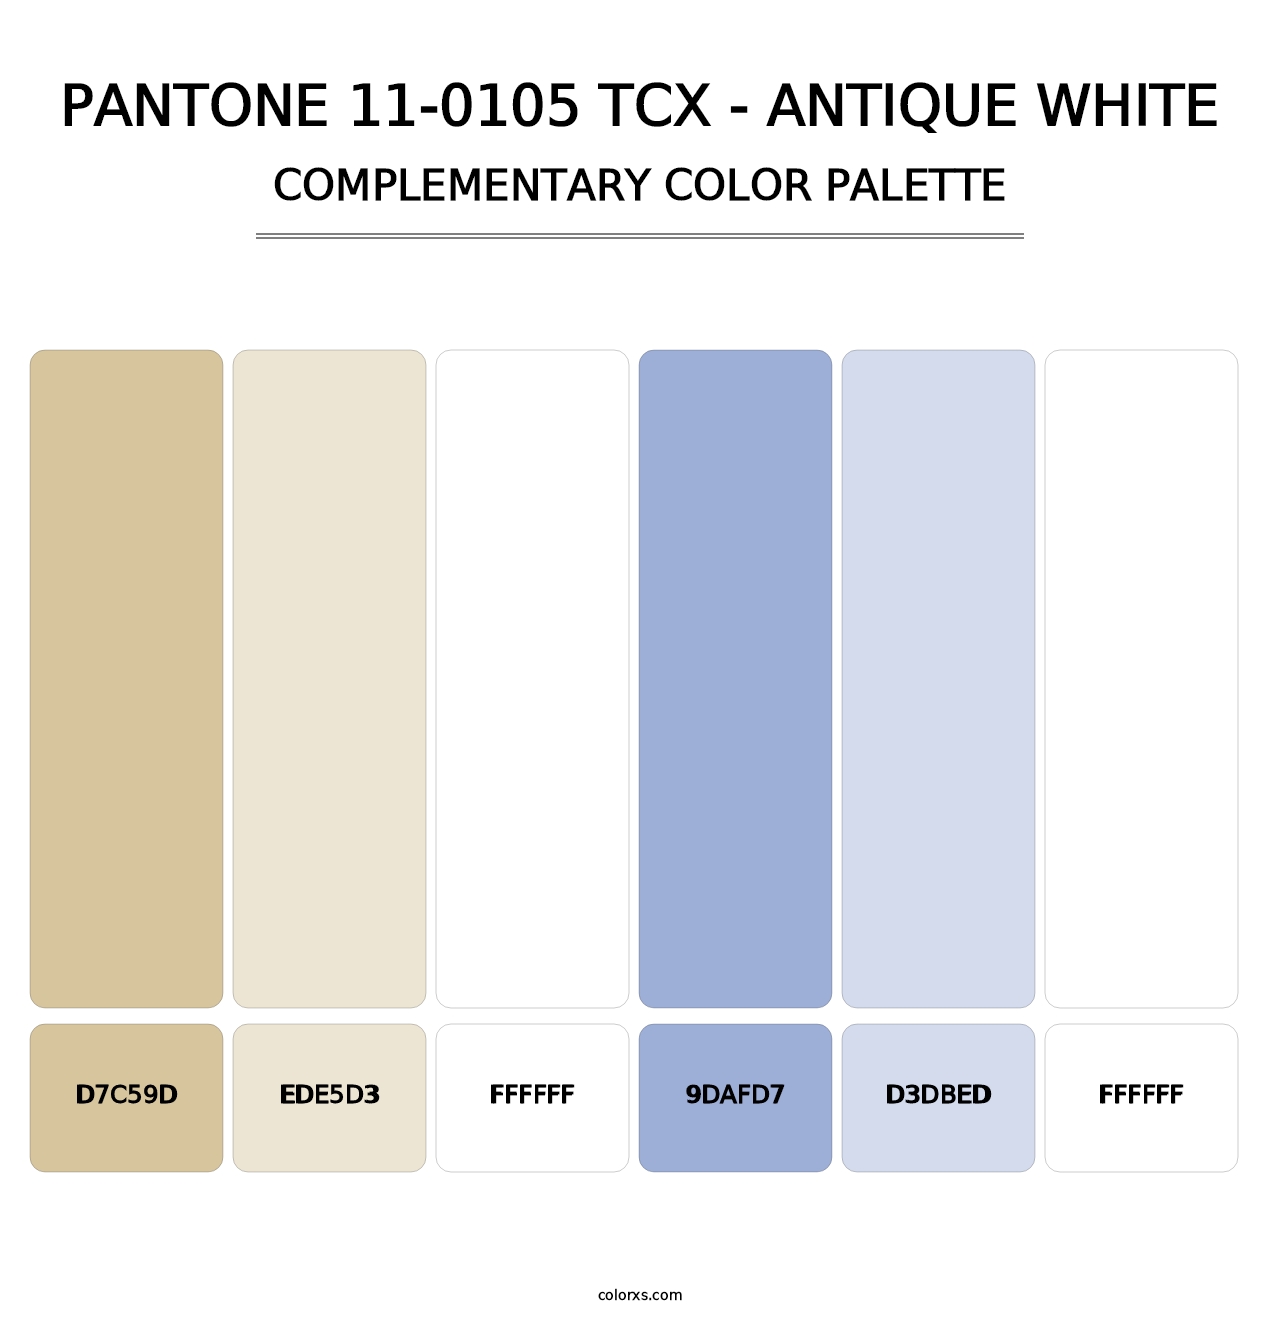 PANTONE 11-0105 TCX - Antique White - Complementary Color Palette